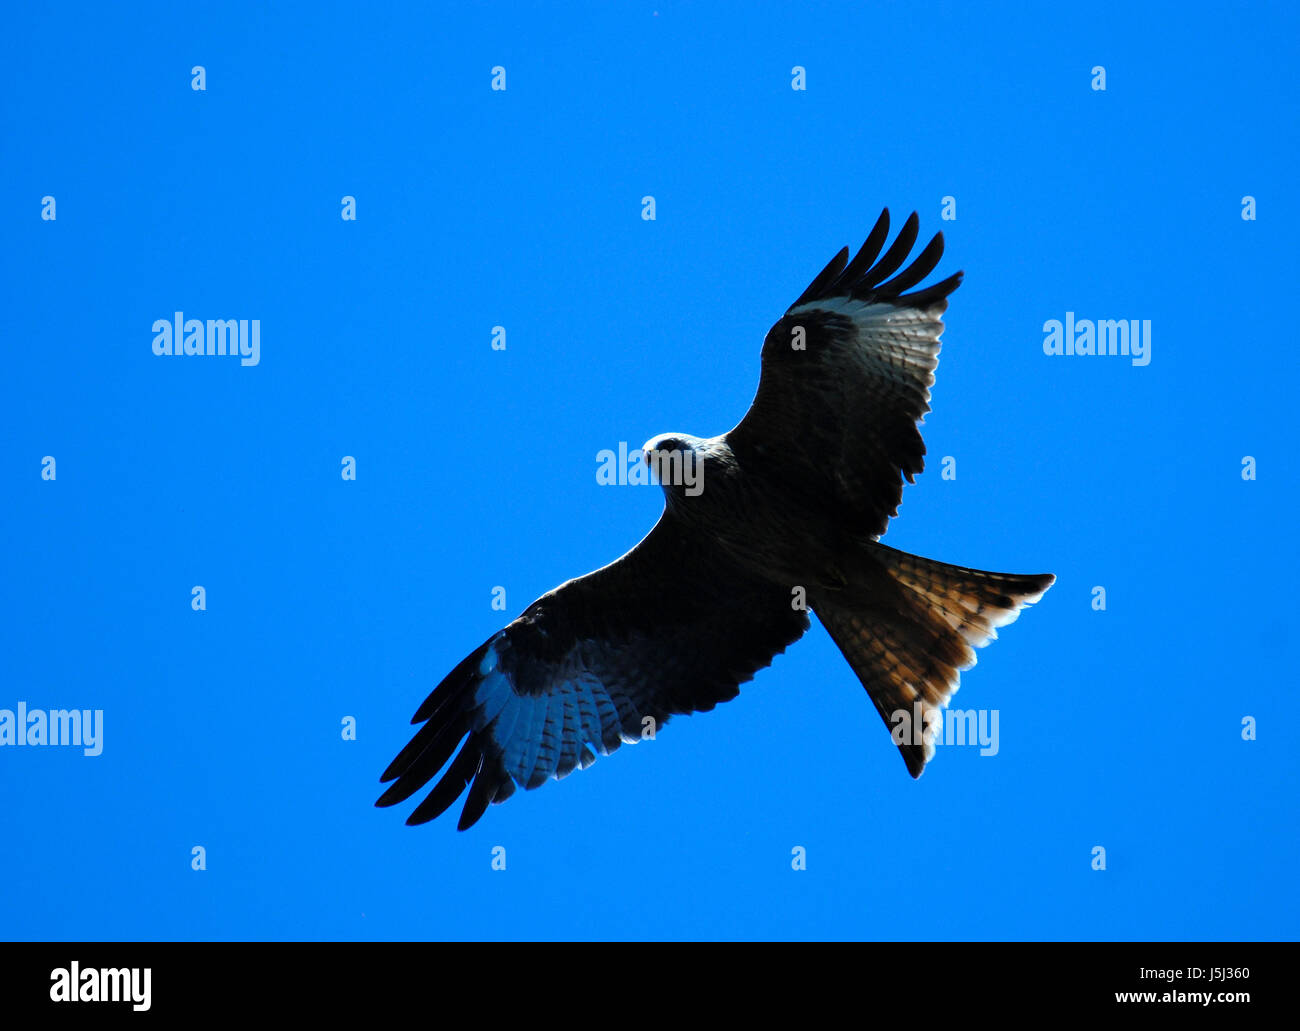 Vogel Vögel Greifvögel Raptor jagen durchscheinenden Kino Foto Bild zeichnen Stockfoto